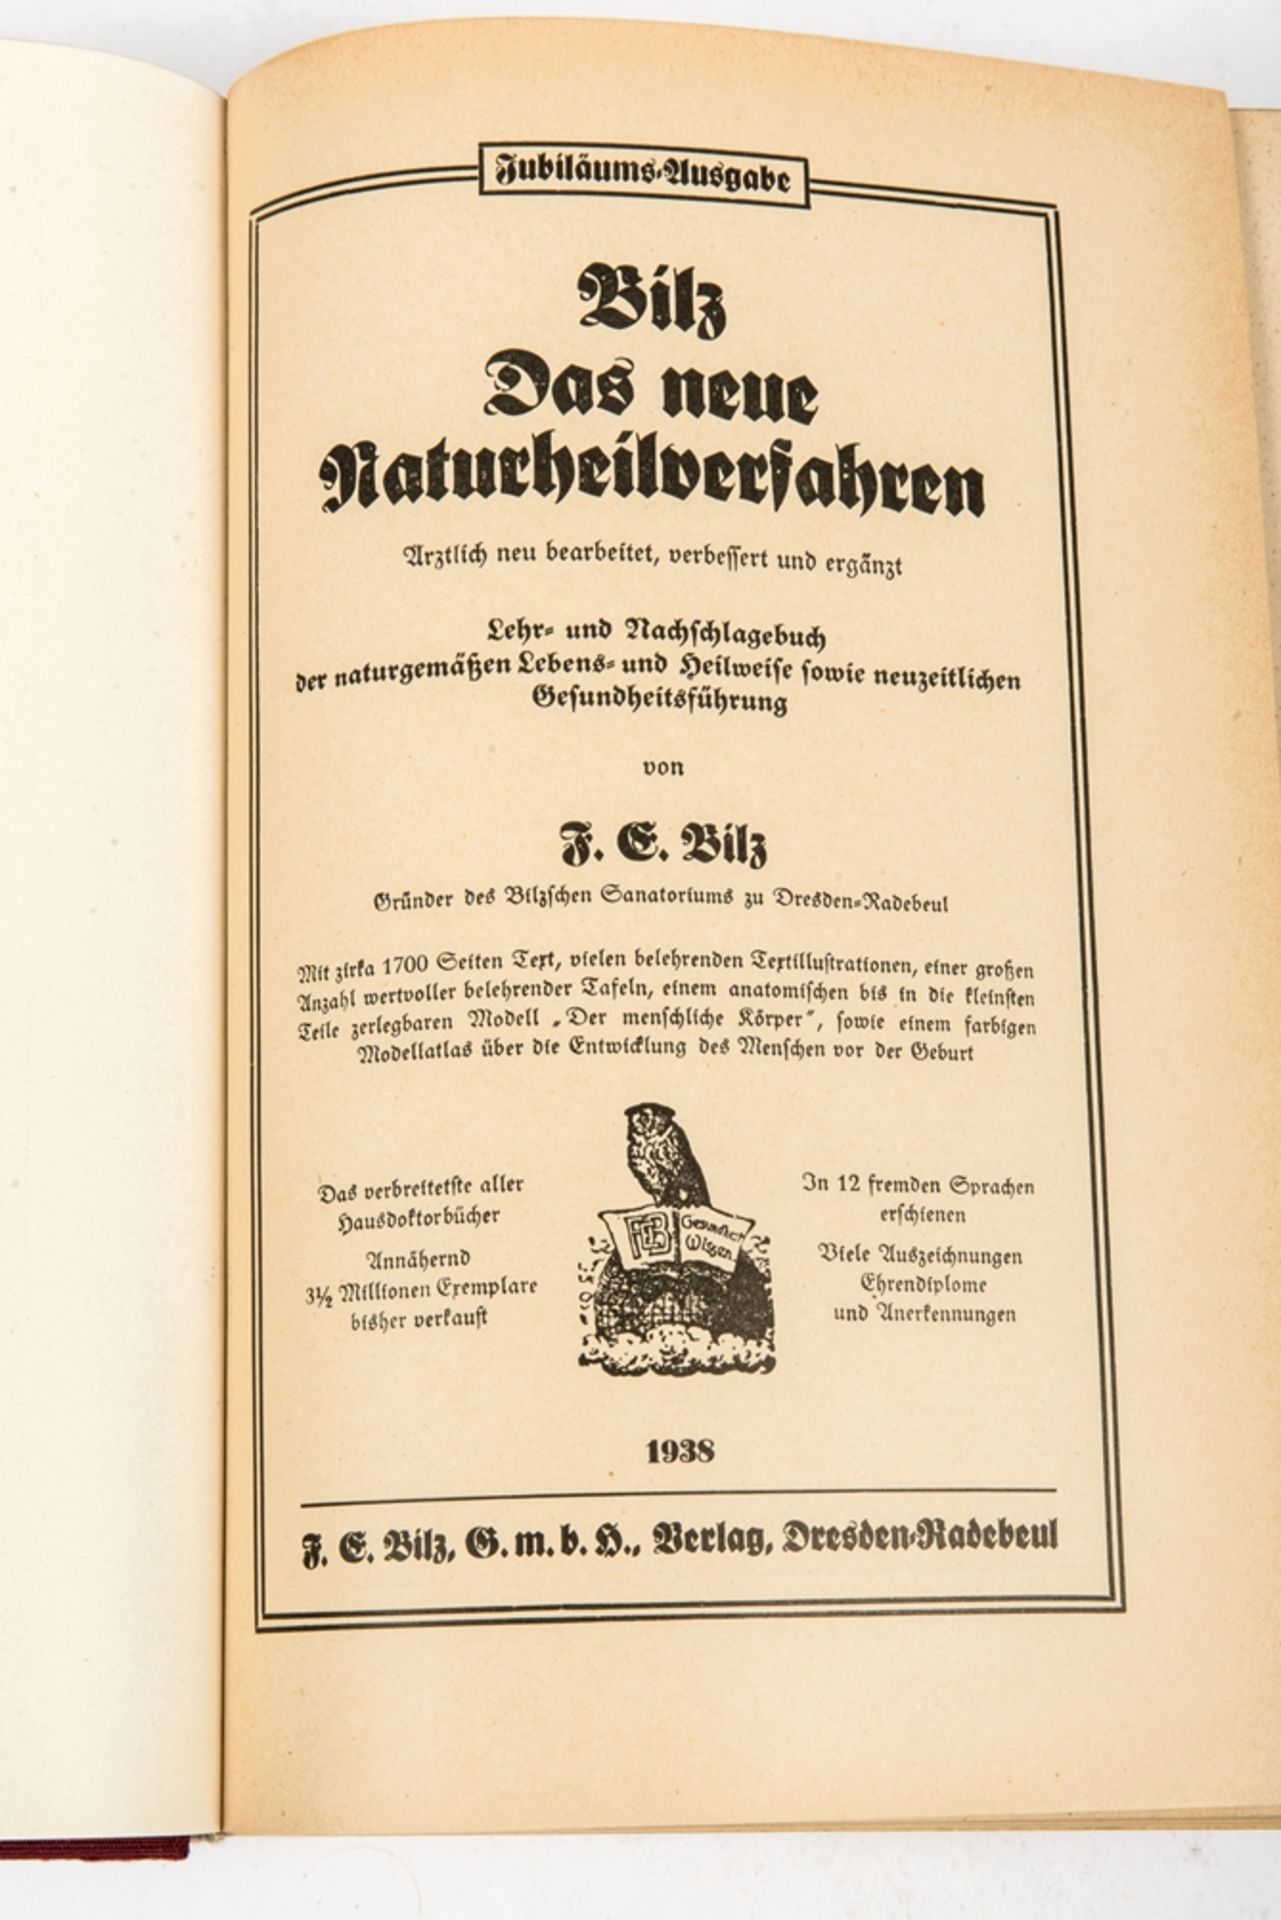 Bilz, Das neue Naturheilverfahren, Jubiläumsausgabe 1938 - Image 3 of 5